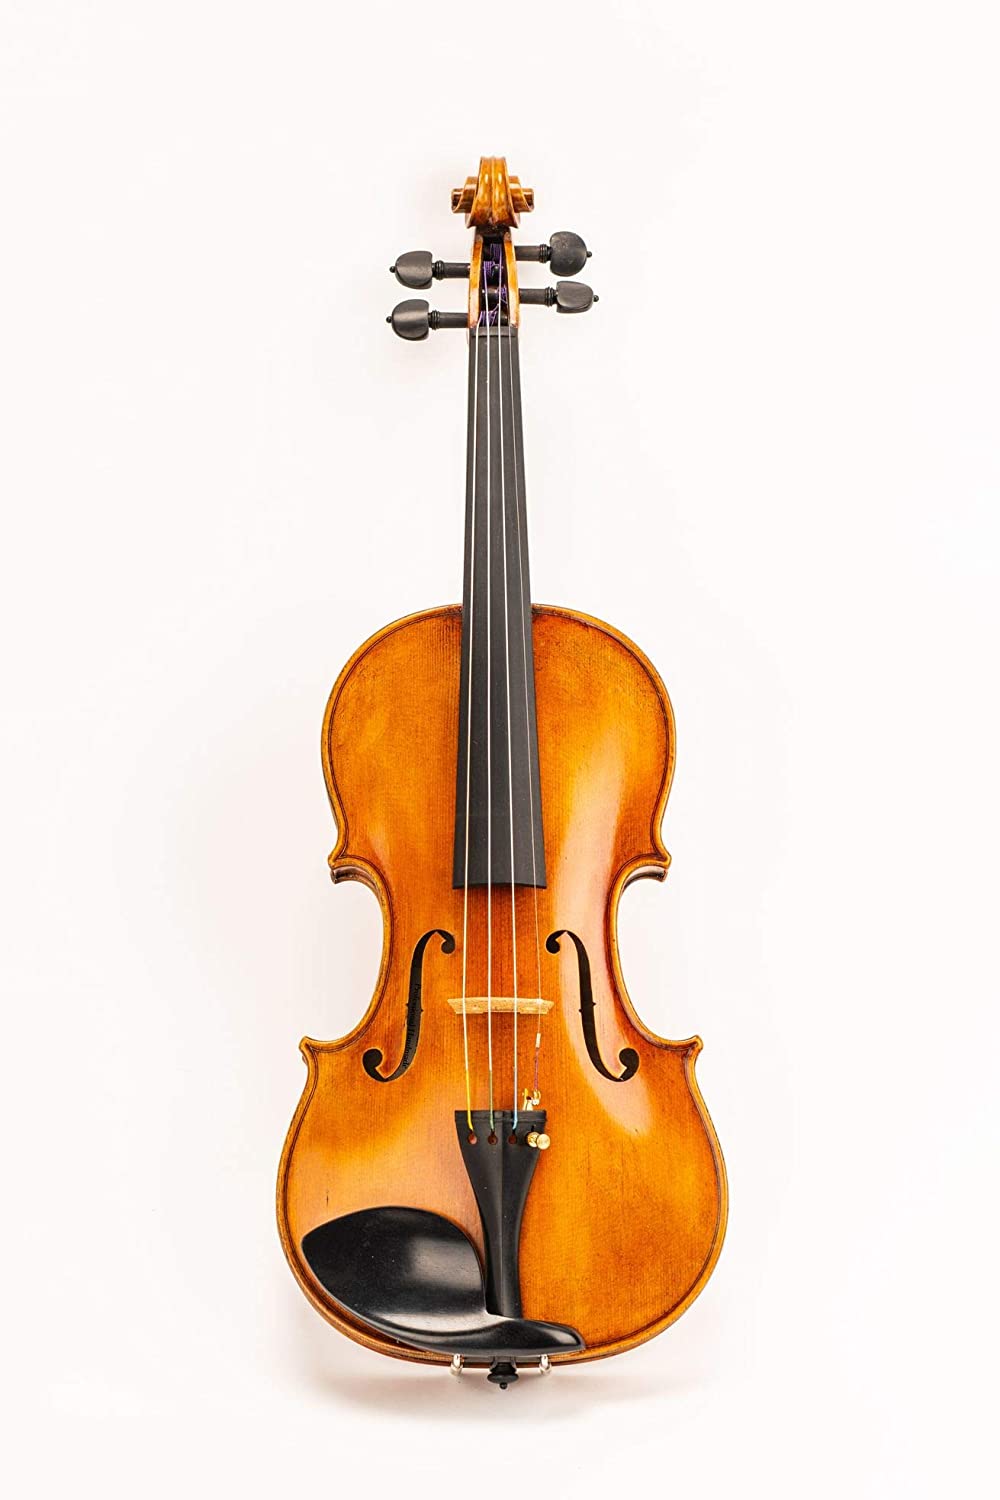 Maestro Old spruce Stradi 4/4 Full Size Violin D Z Strad Model 509 Powerful tone Antique Varnish